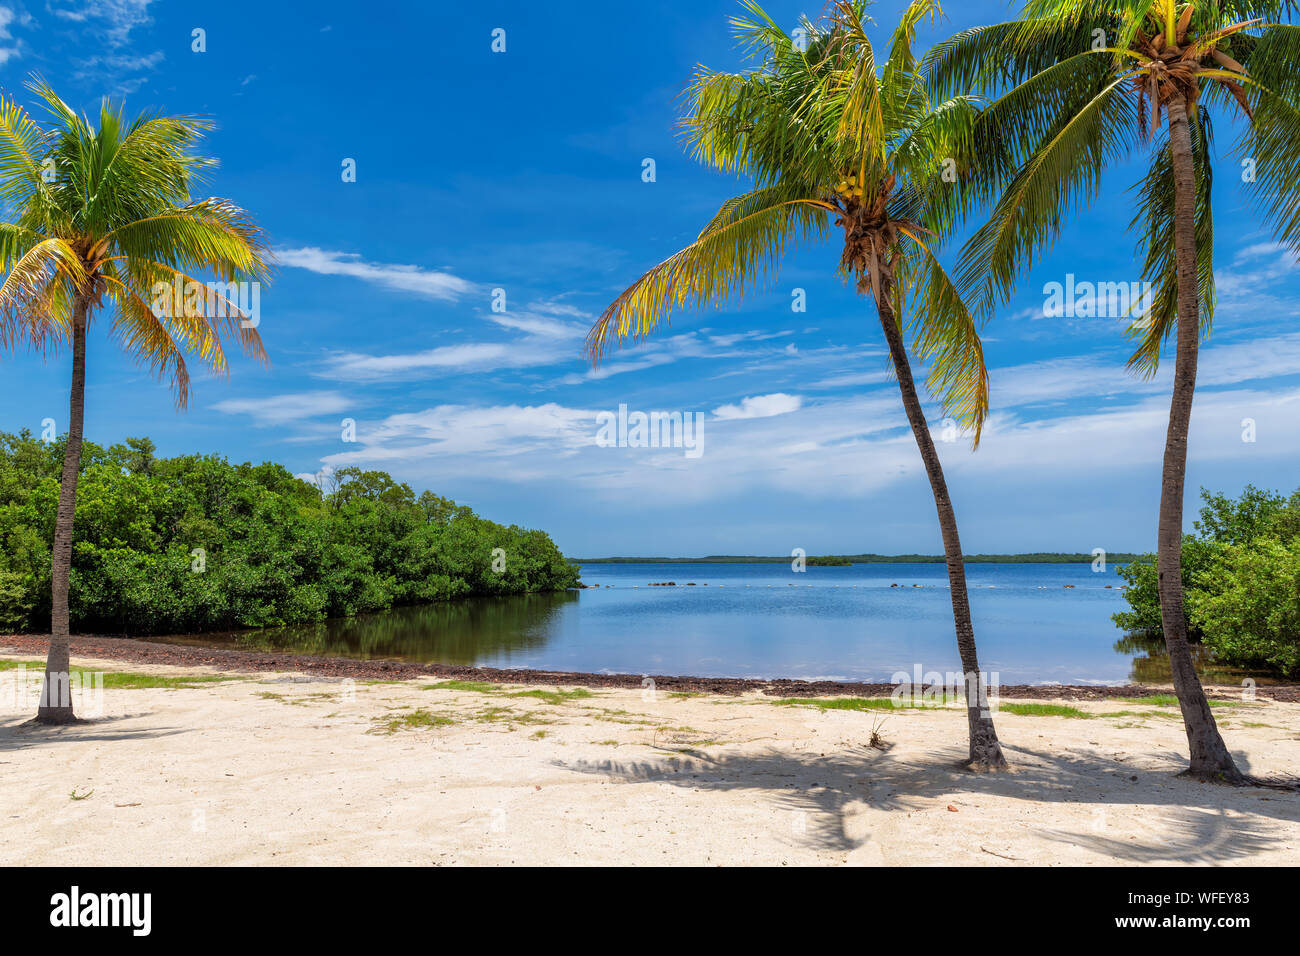 Des cocotiers sur une plage tropicale dans la région de Florida Keys. Banque D'Images